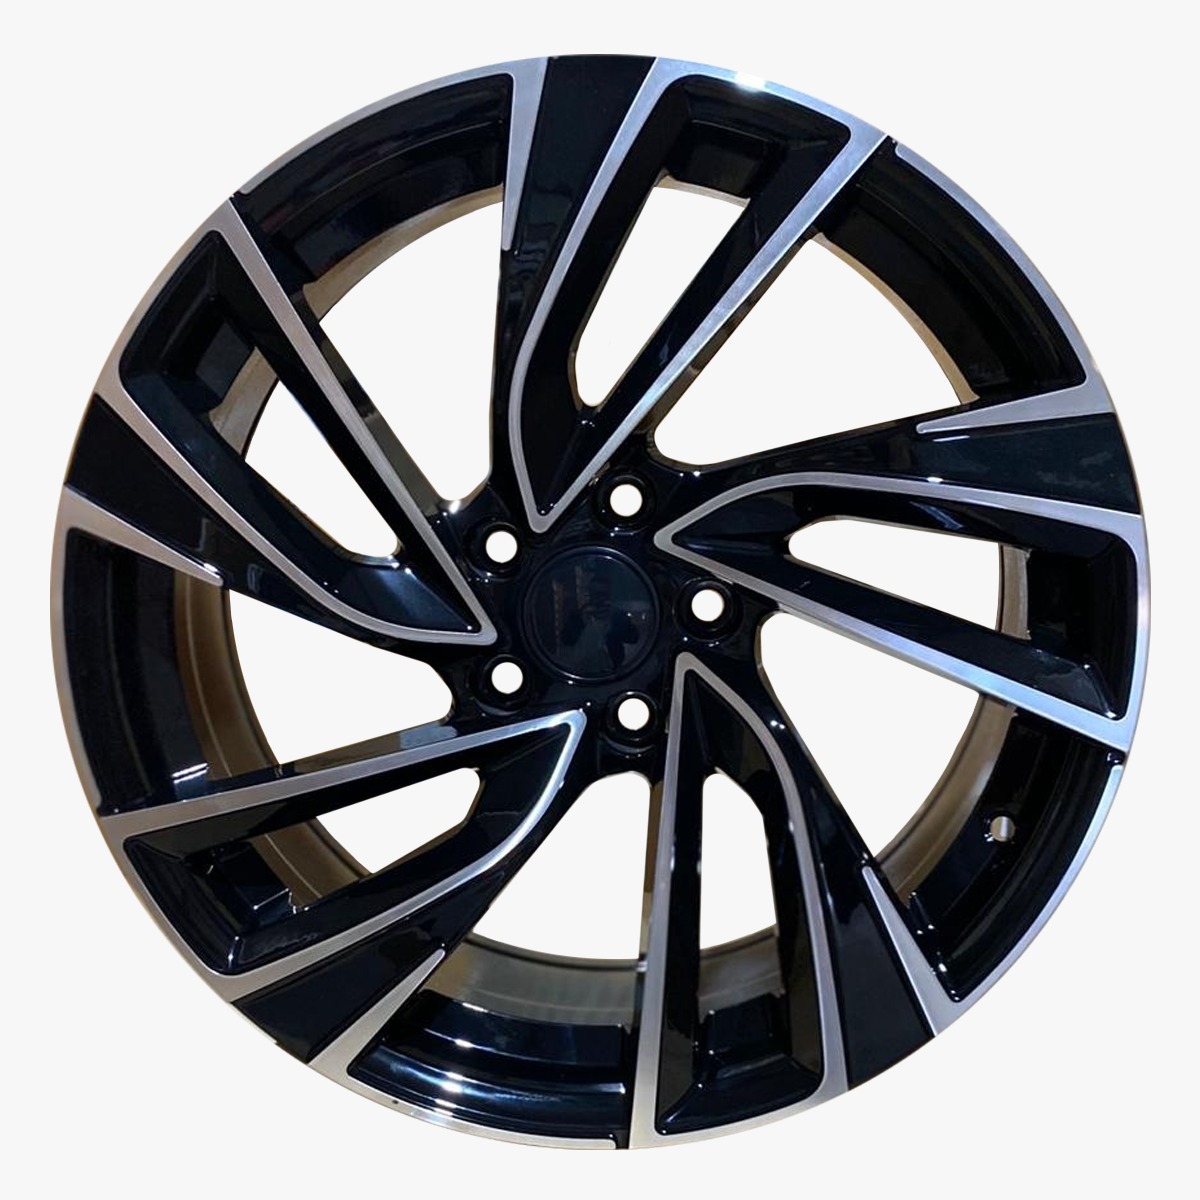 17"  Alloy Wheels (Audi,Volkswagen)   Adelaide 